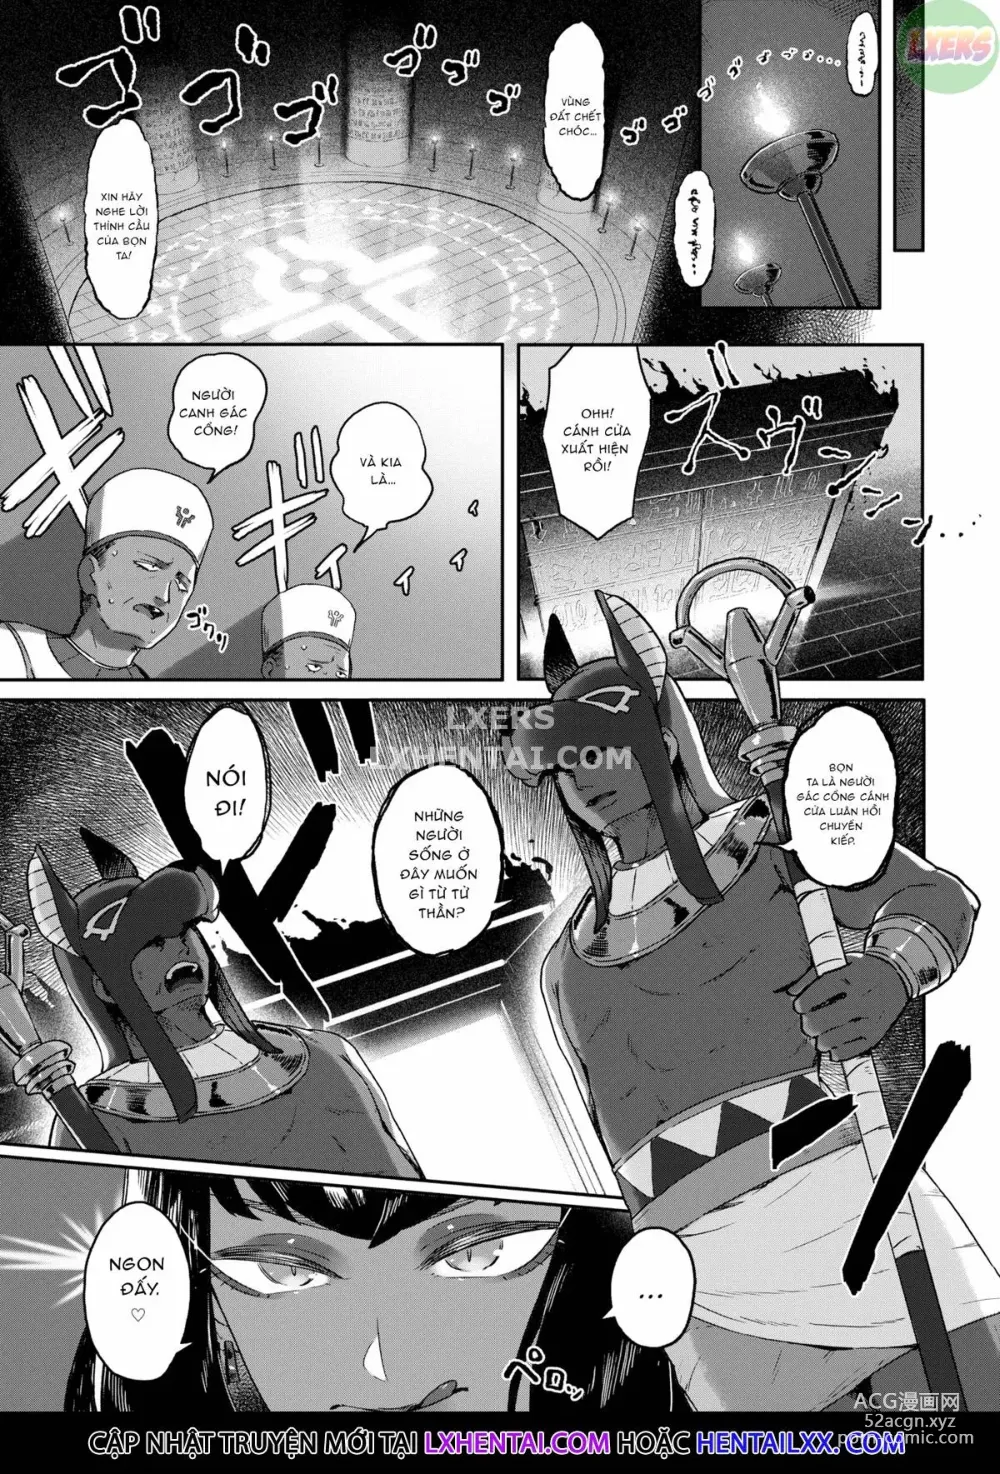 Page 5 of manga Doerogurifu (uncensored)